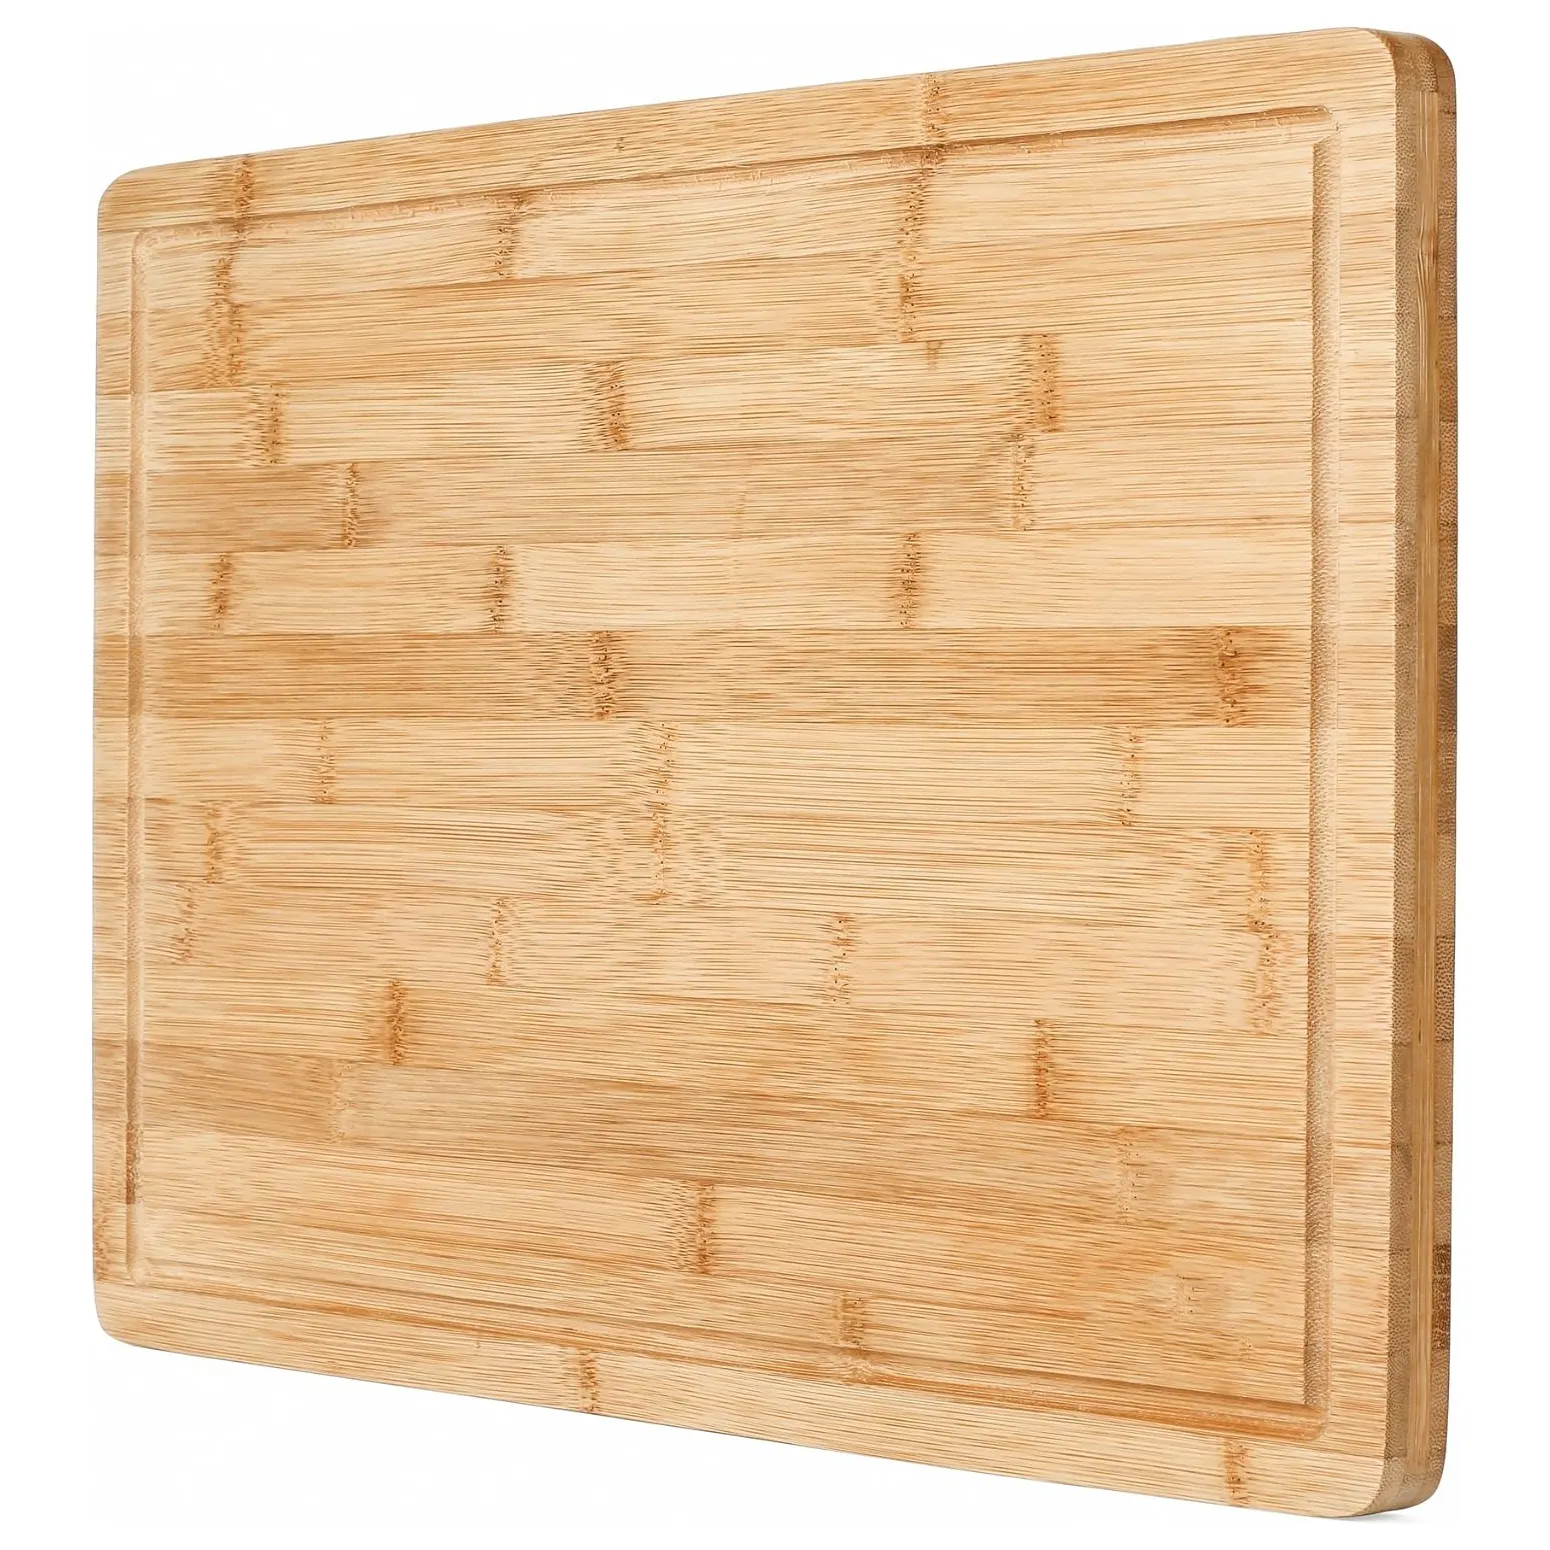 Sulu oluk ile Premium organik bamextra ekstra büyük kesme tahtası kasap kesme tahtası ekmek kesme tahtaları